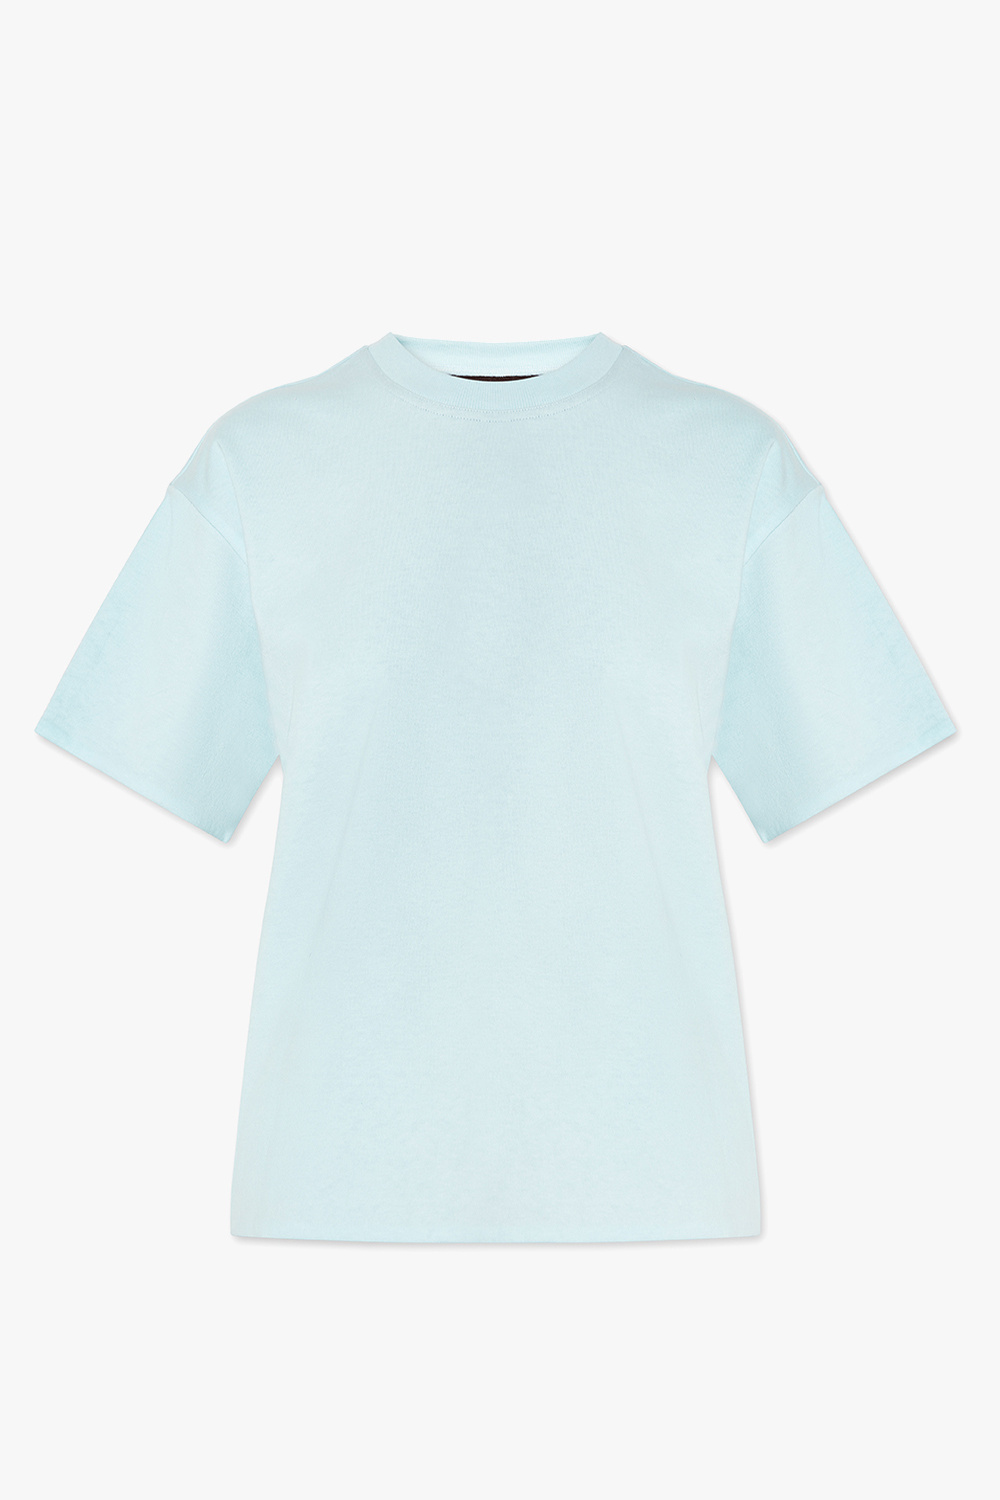 Louis Vuitton Monogram Wave Self-Tie T-Shirt Blue. Size L0